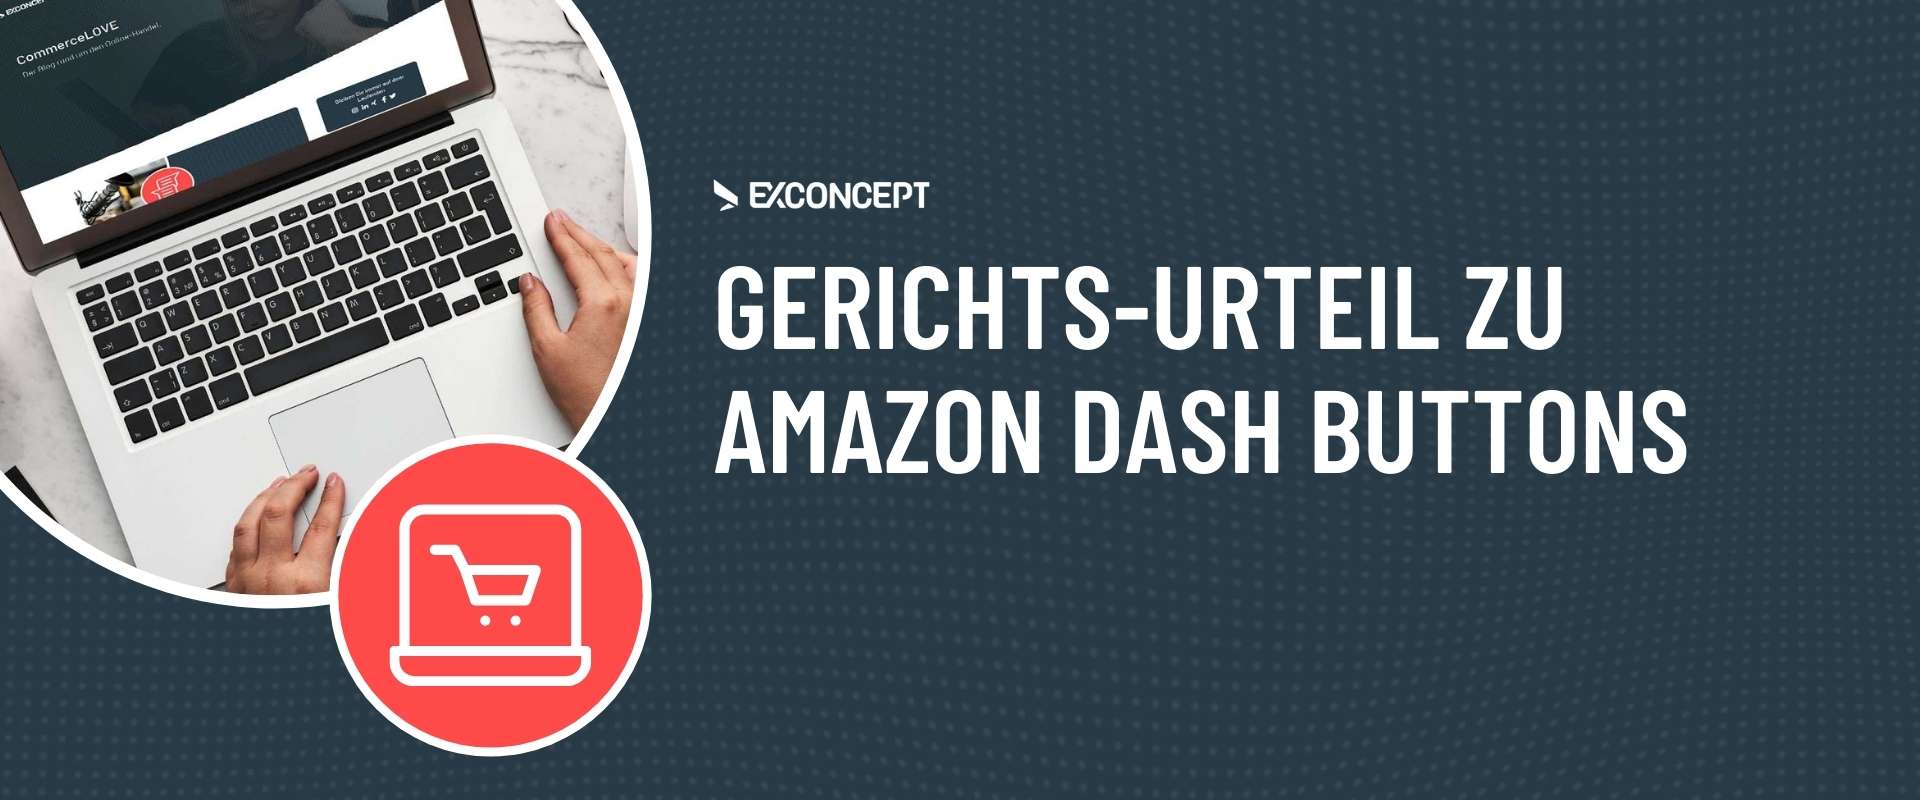 Urteil zu Amazon Dash-Buttons